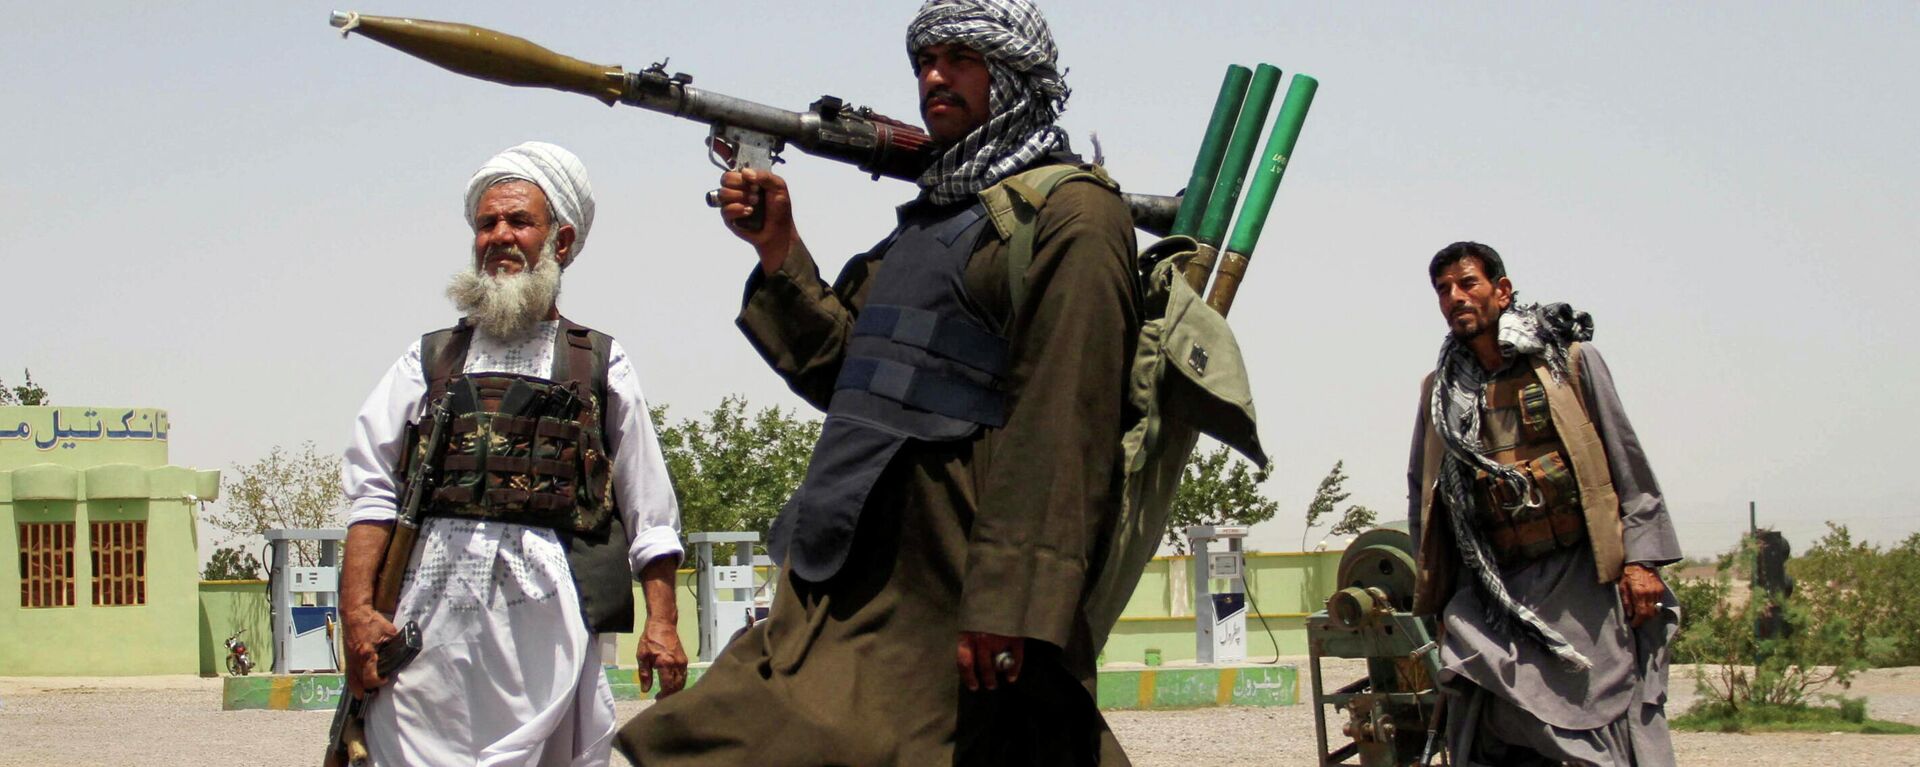  Бывшие моджахеды держат оружие, чтобы поддержать афганские силы в их борьбе против талибов - Sputnik Таджикистан, 1920, 11.08.2021